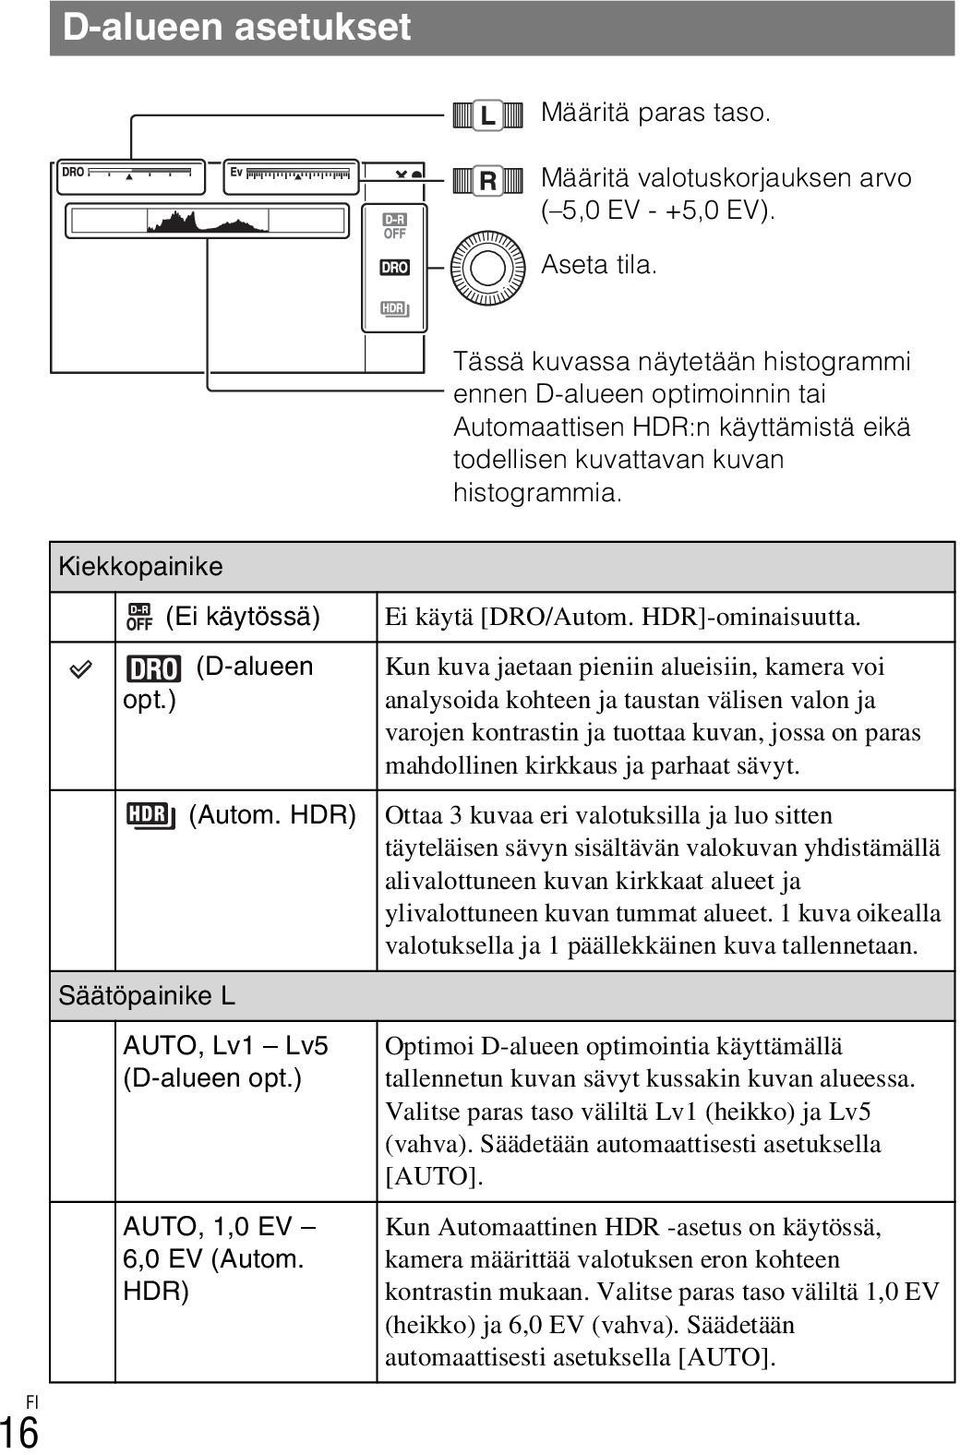 ) Säätöpainike L (Ei käytössä) (D-alueen (Autom. HDR) AUTO, Lv1 Lv5 (D-alueen opt.) AUTO, 1,0 EV 6,0 EV (Autom. HDR) Ei käytä [DRO/Autom. HDR]-ominaisuutta.